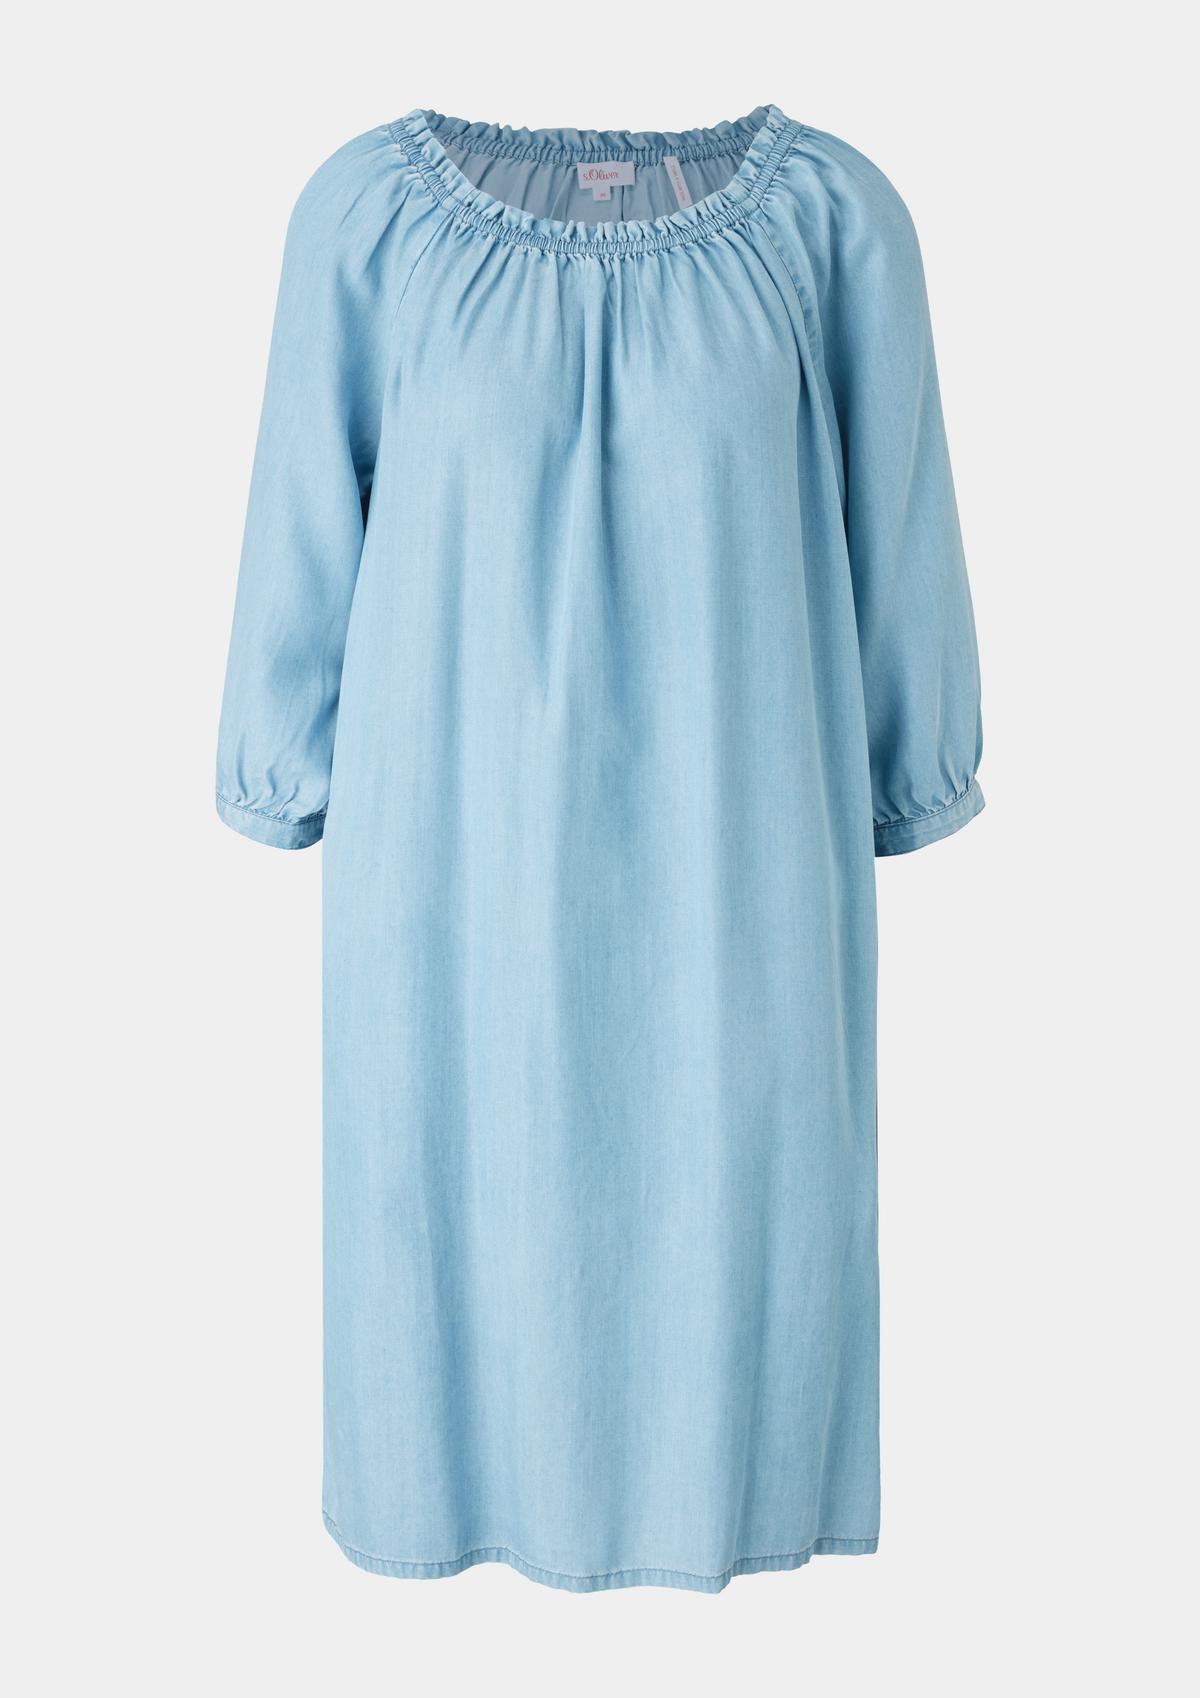 Midi-Kleid mit Rüschendetail blassblau 